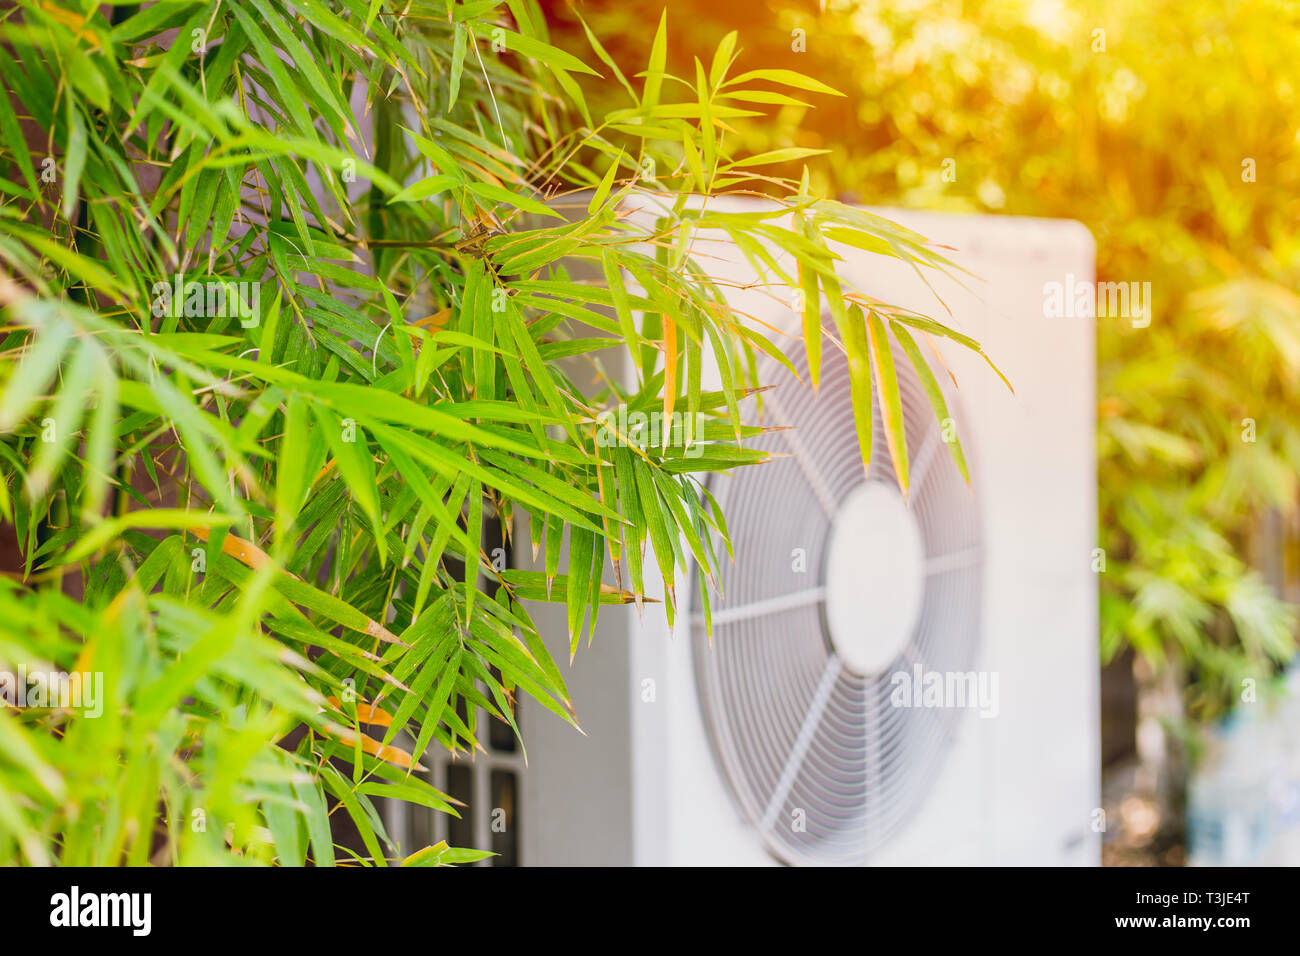 Bambus Baum mit Kompressor für Kühlung Home mit der Natur der globalen Erwärmung Konzept zu schützen. Stockfoto